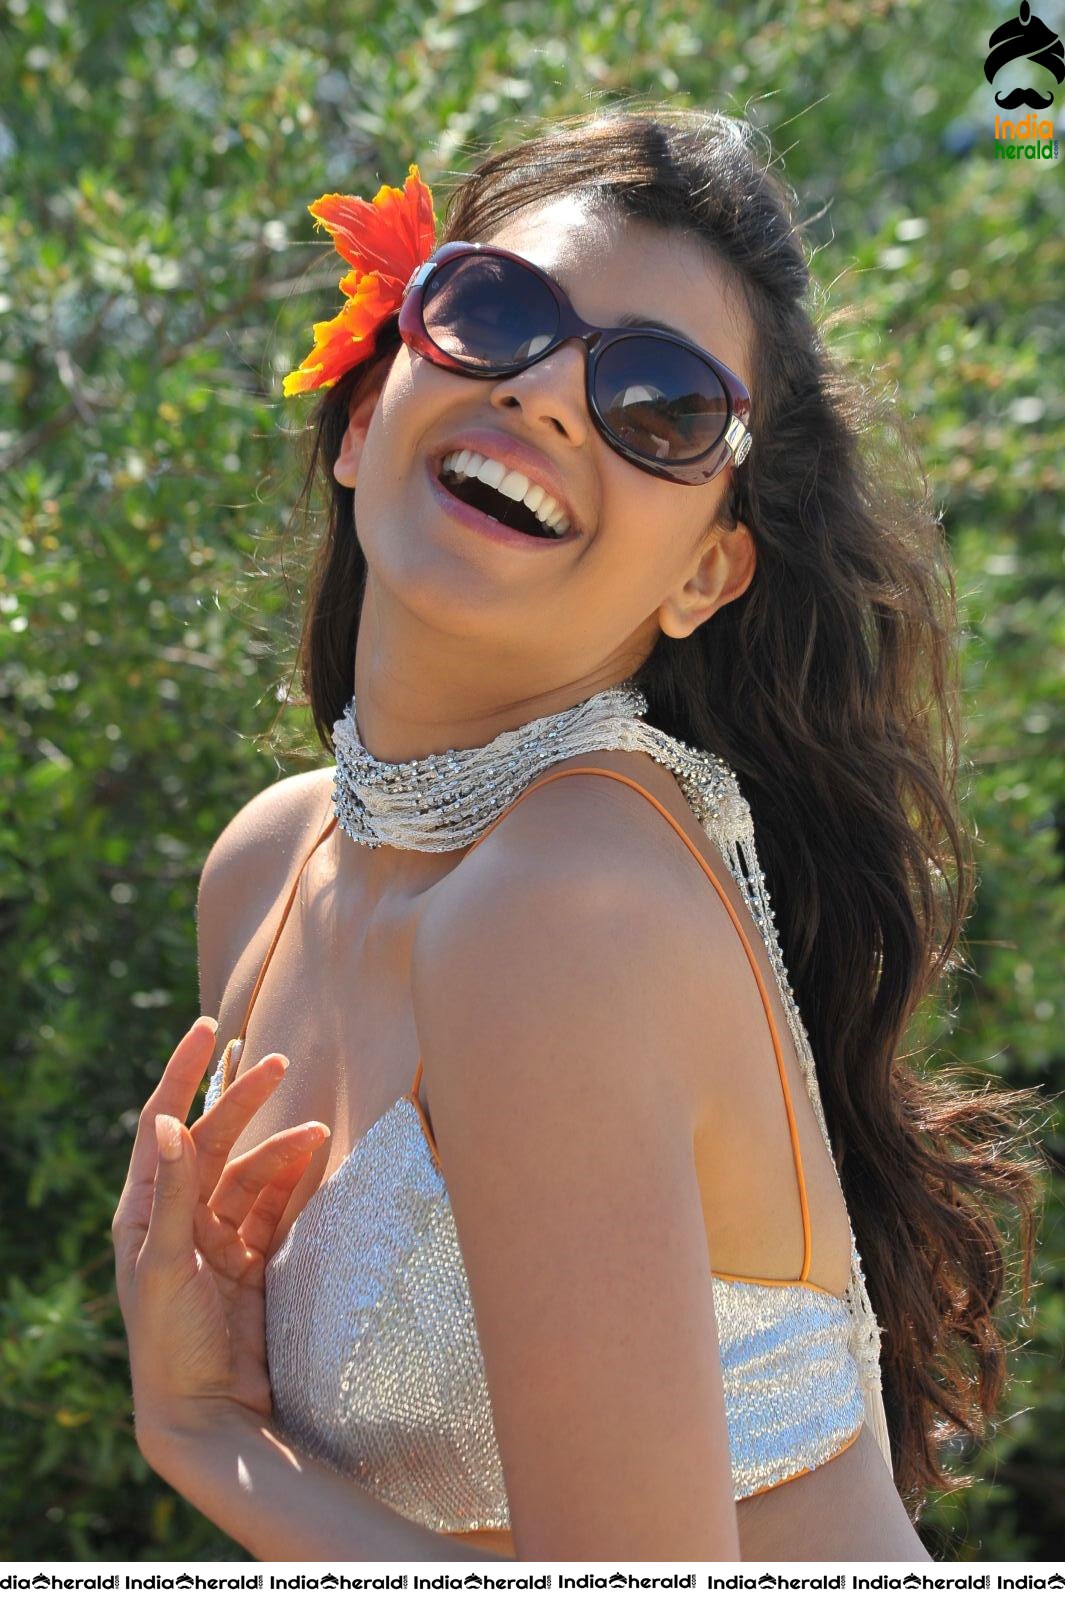 Kajal Aggarwal Hottest Skin Show Photos in Bikini on Beach Sands as she teases our mood Set 1